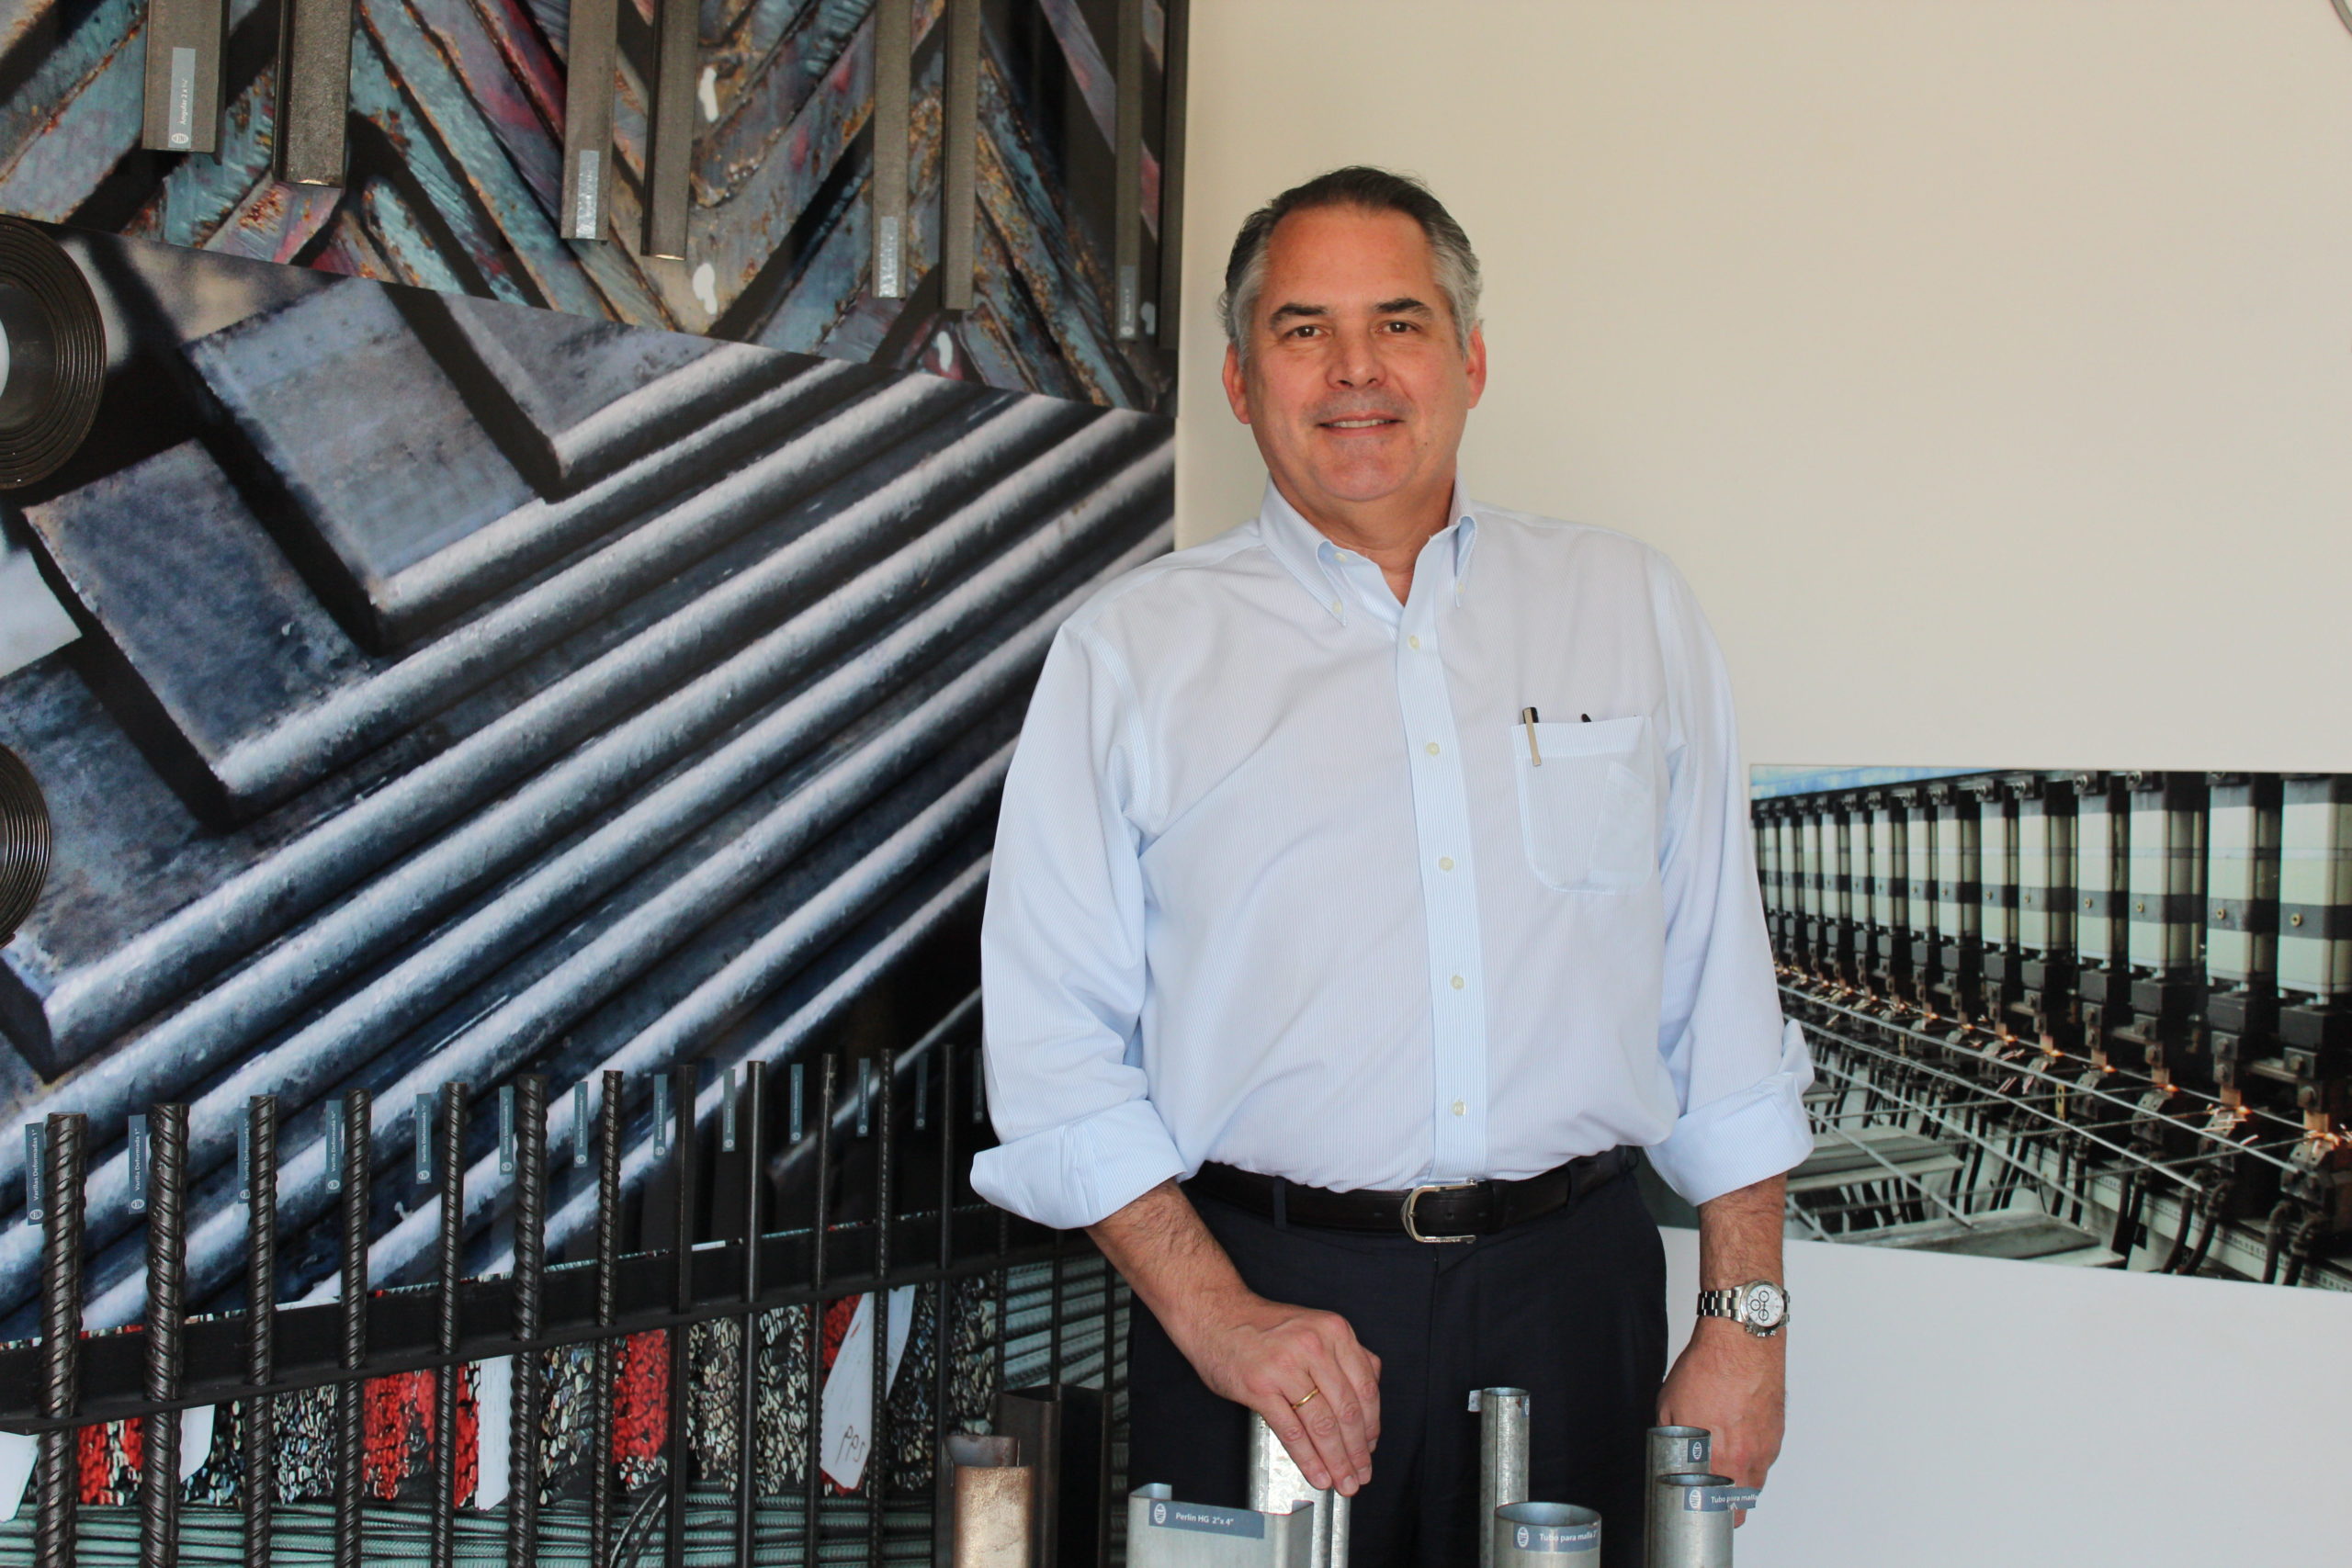 Carlos Valiente, CEO de INCA, estuvo en Costa Rica y TYT conversó con él acerca del sector de acero.